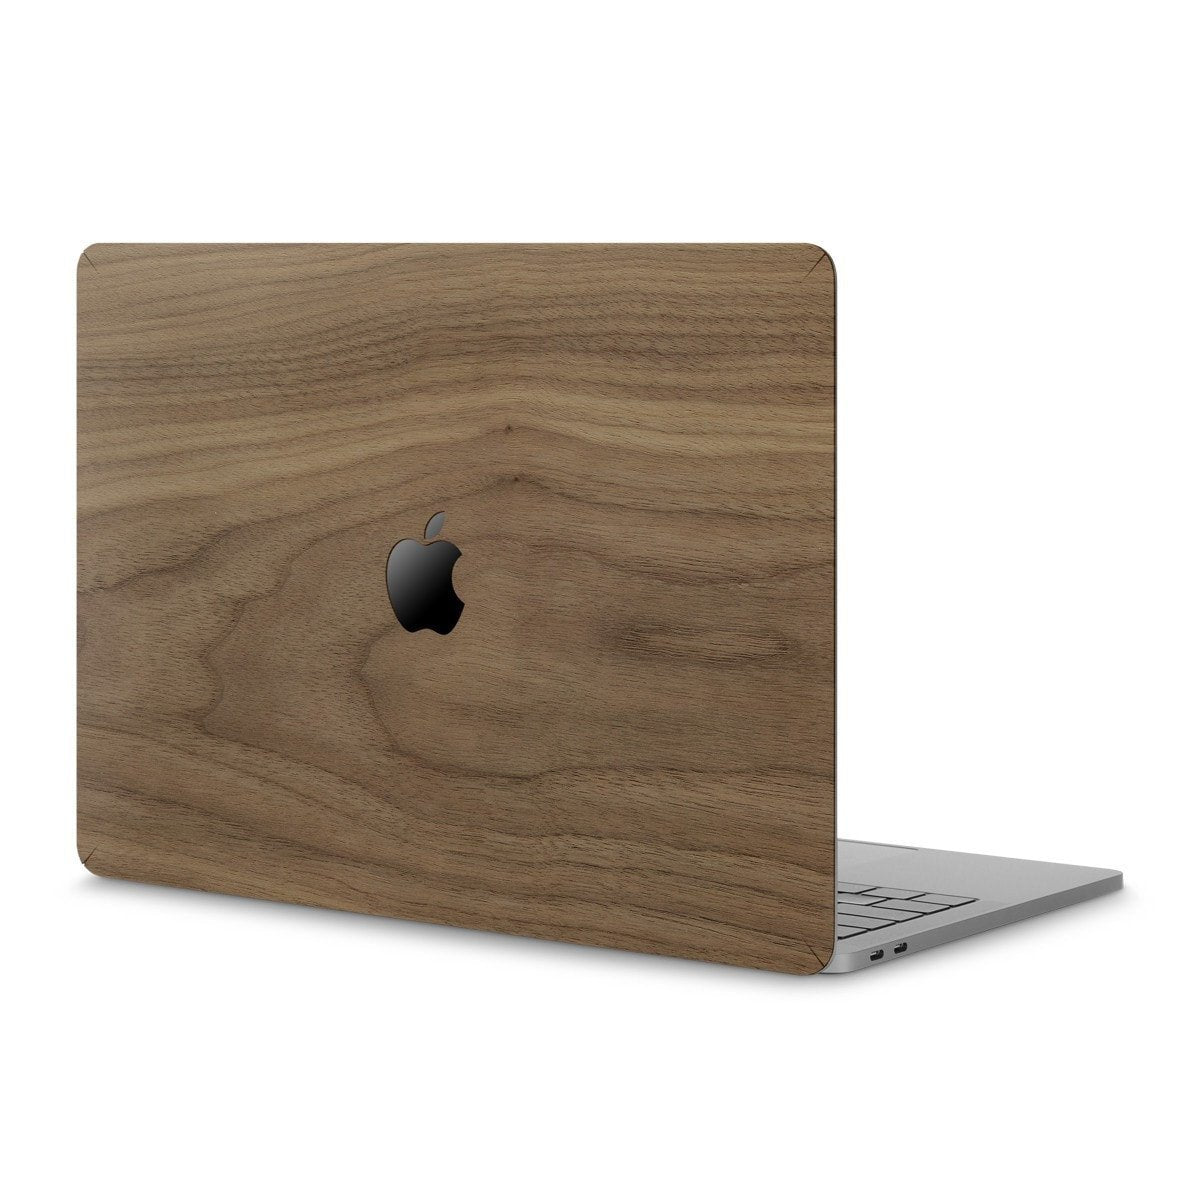 Wooden Skin for MacBook